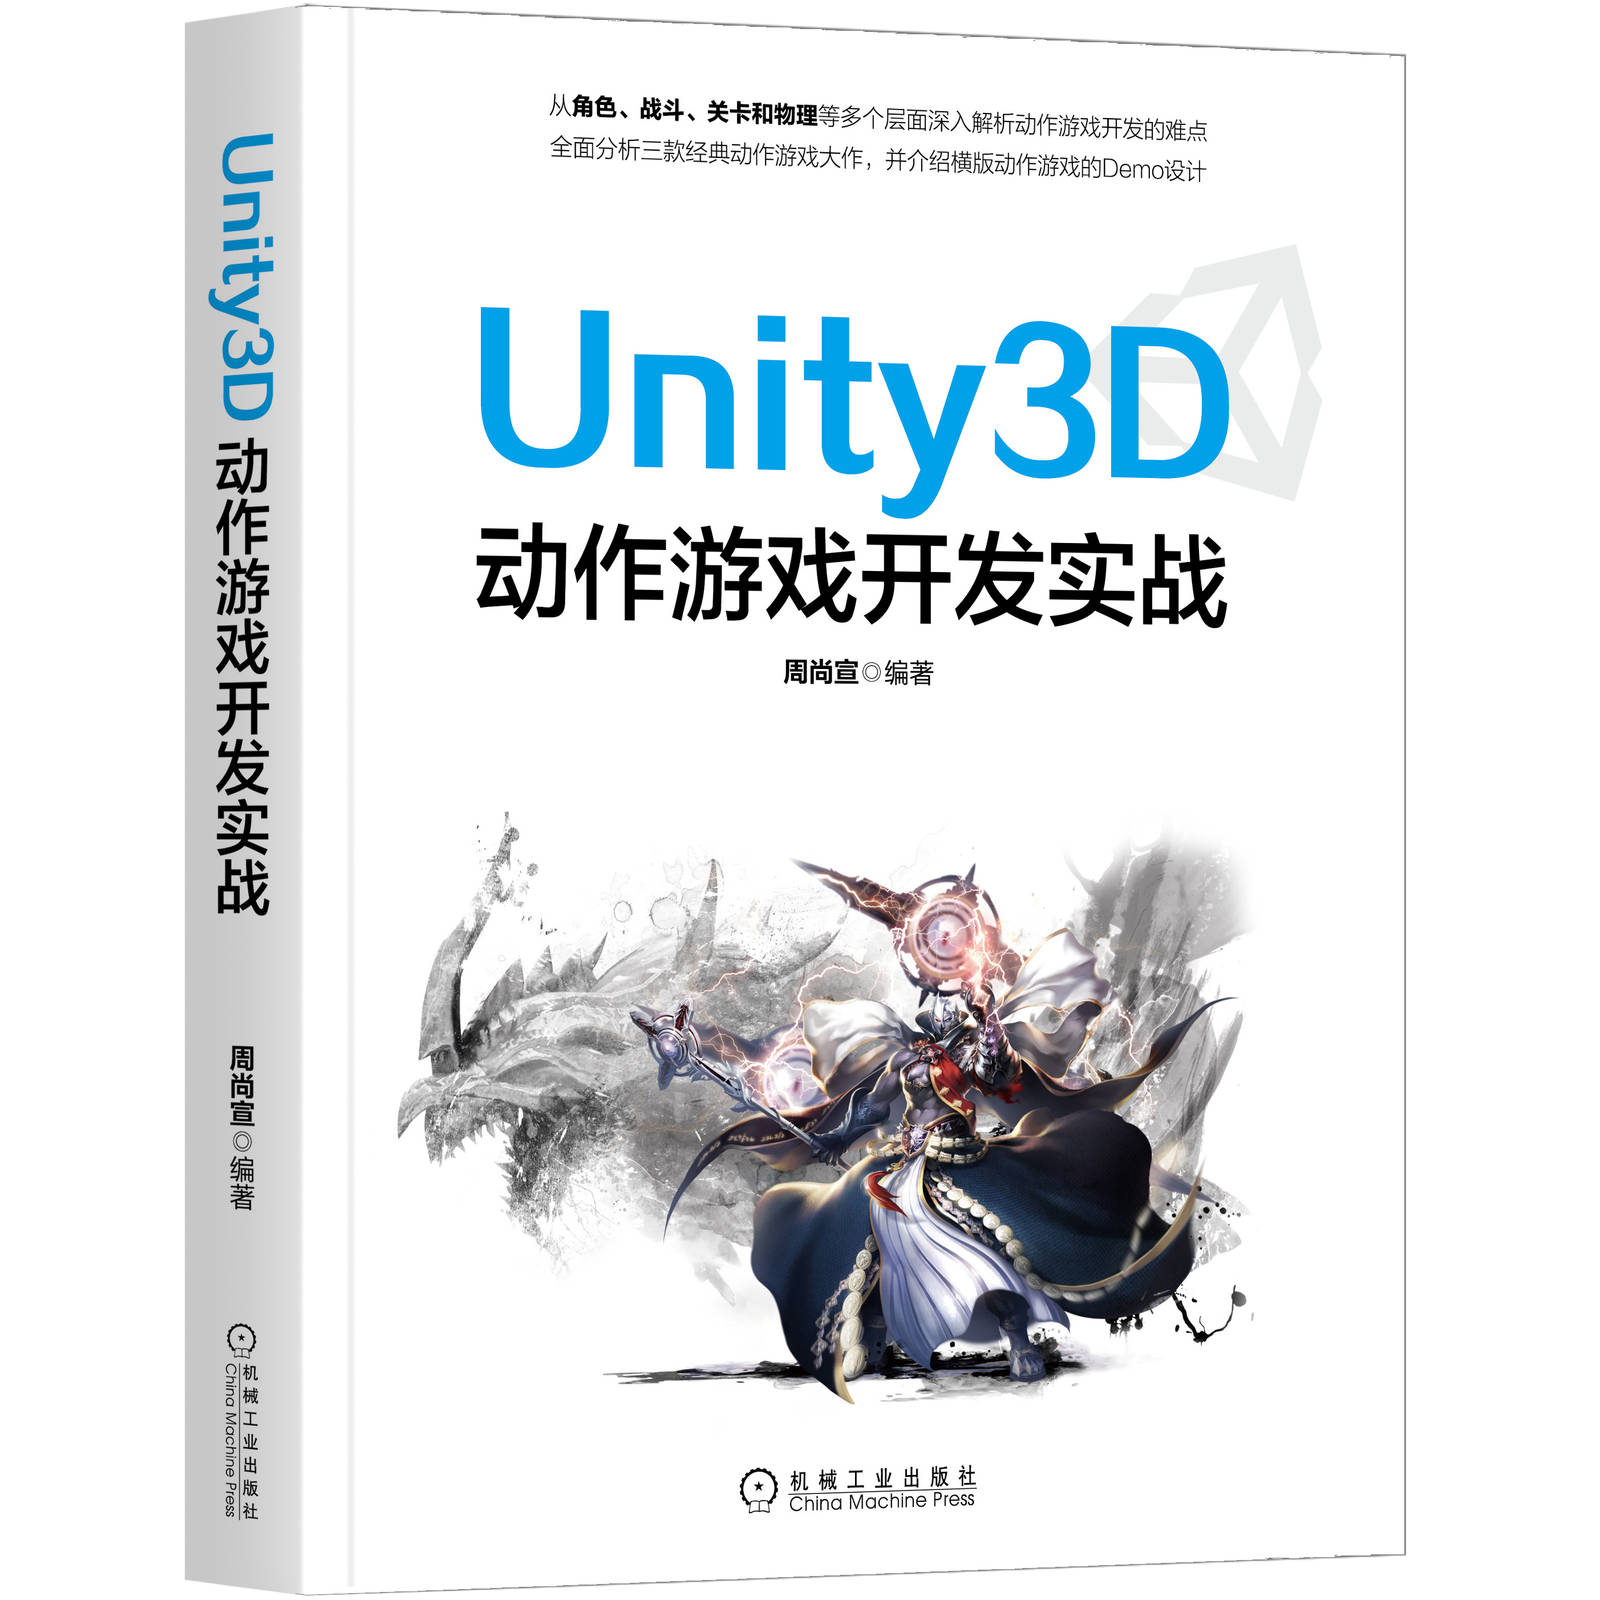 Unity3D动作游戏开发实战编程从入门到精通周尚宣Steam游戏开发 画面特效与后处理c#语言程序设计计算机网络教程书籍角色战斗关卡